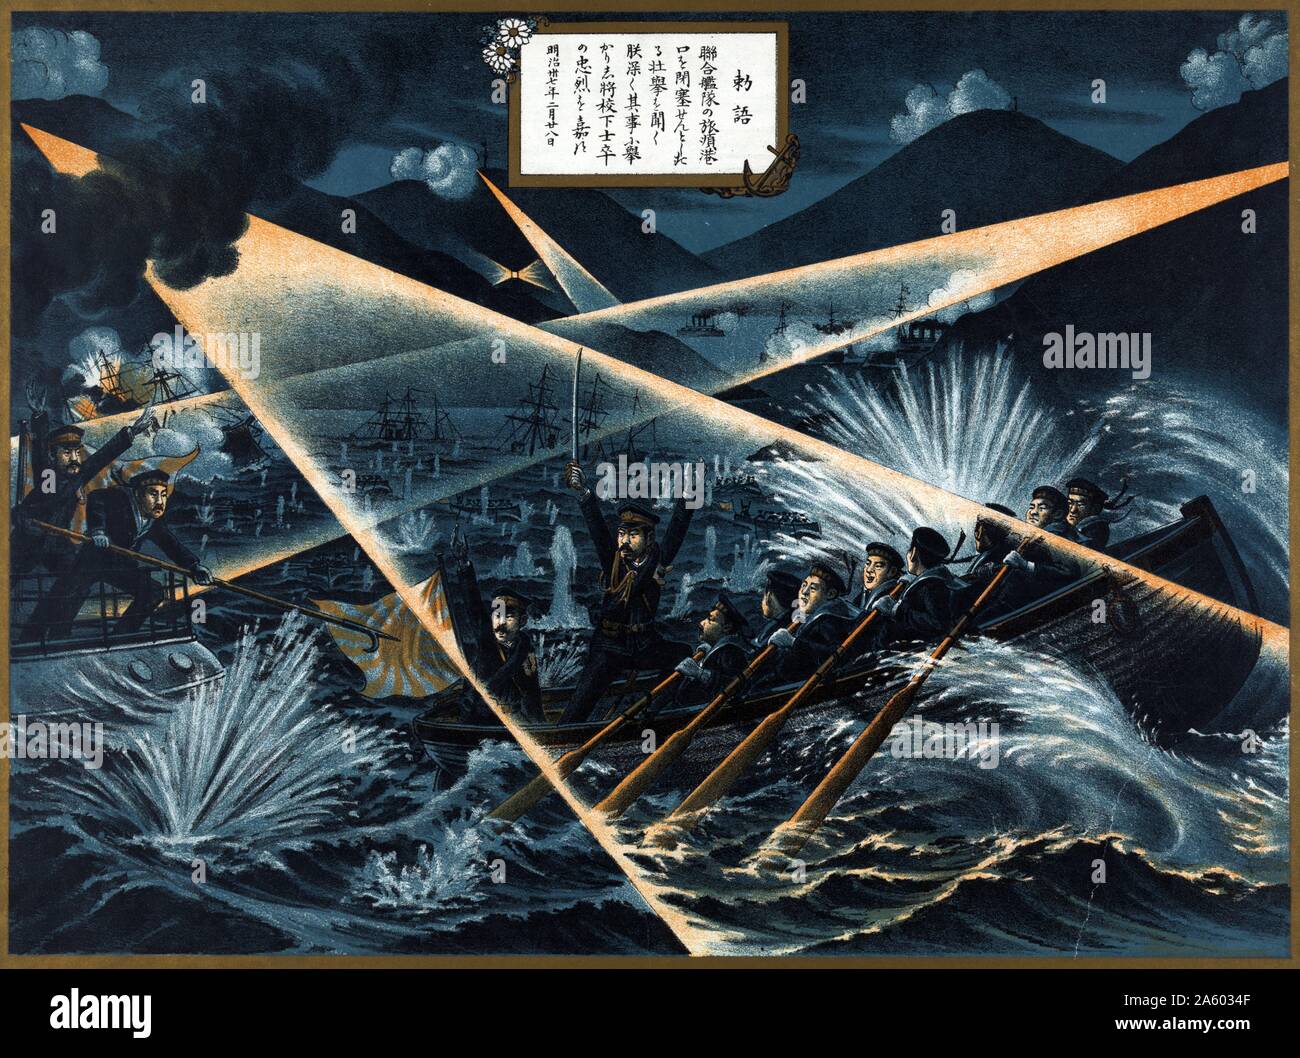 Holzschnitt-Abbildung der japanischen Truppen versuchen, die blockade von Port Arthur auf kleinen Booten während des russisch-japanischen Krieges. Datiert 1904. Stockfoto